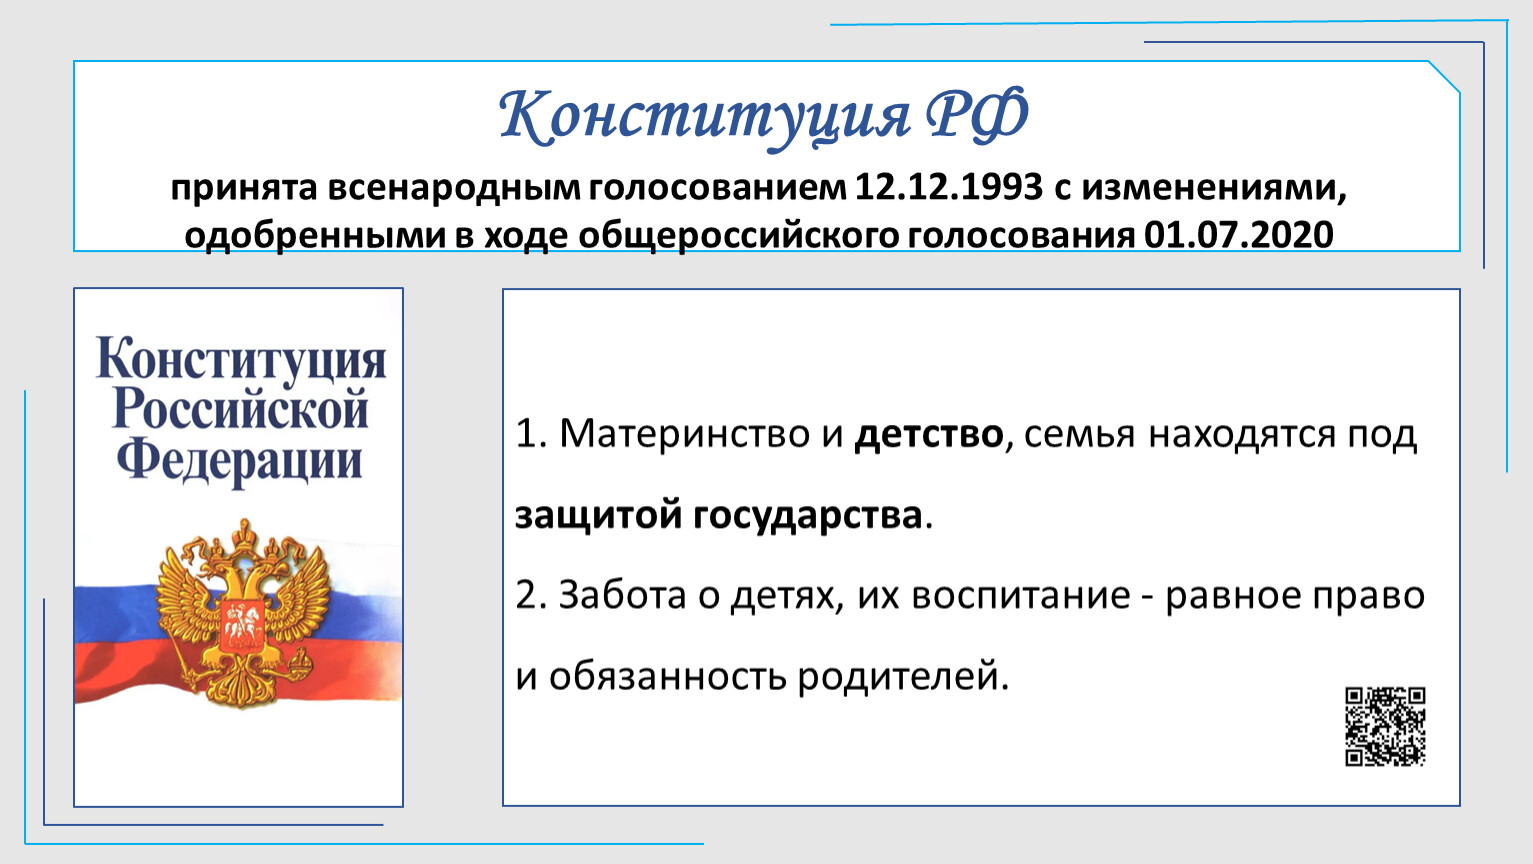 Конституция РФ была принята всенародным голосованием. Принятие всенародным голосованием конституции российской федерации